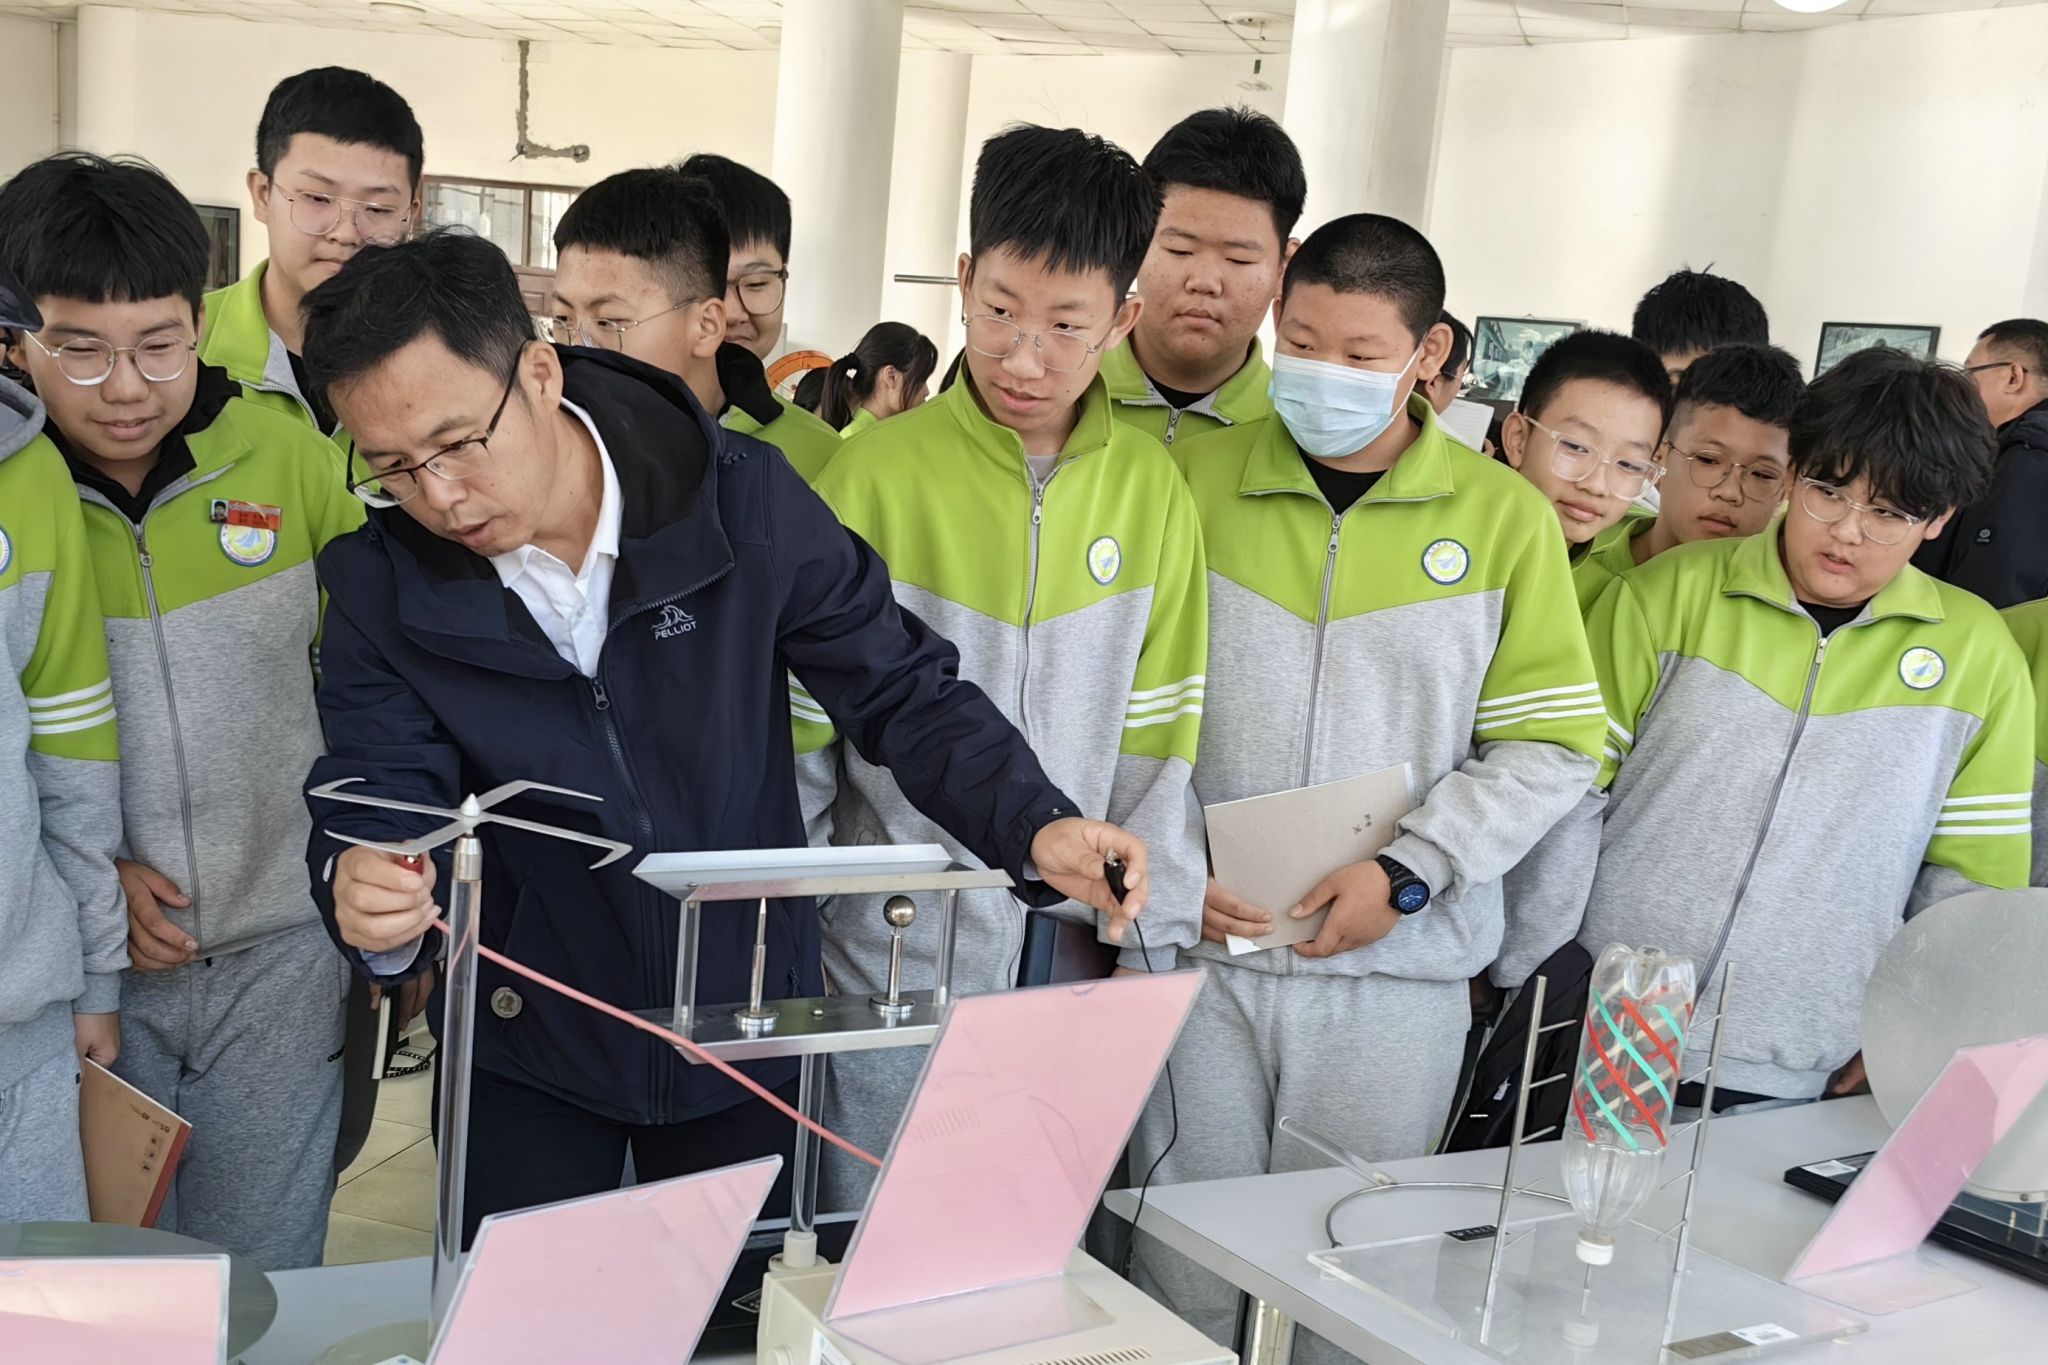 物理与电子工程学院与大庆市三永学校共建研习合作基地